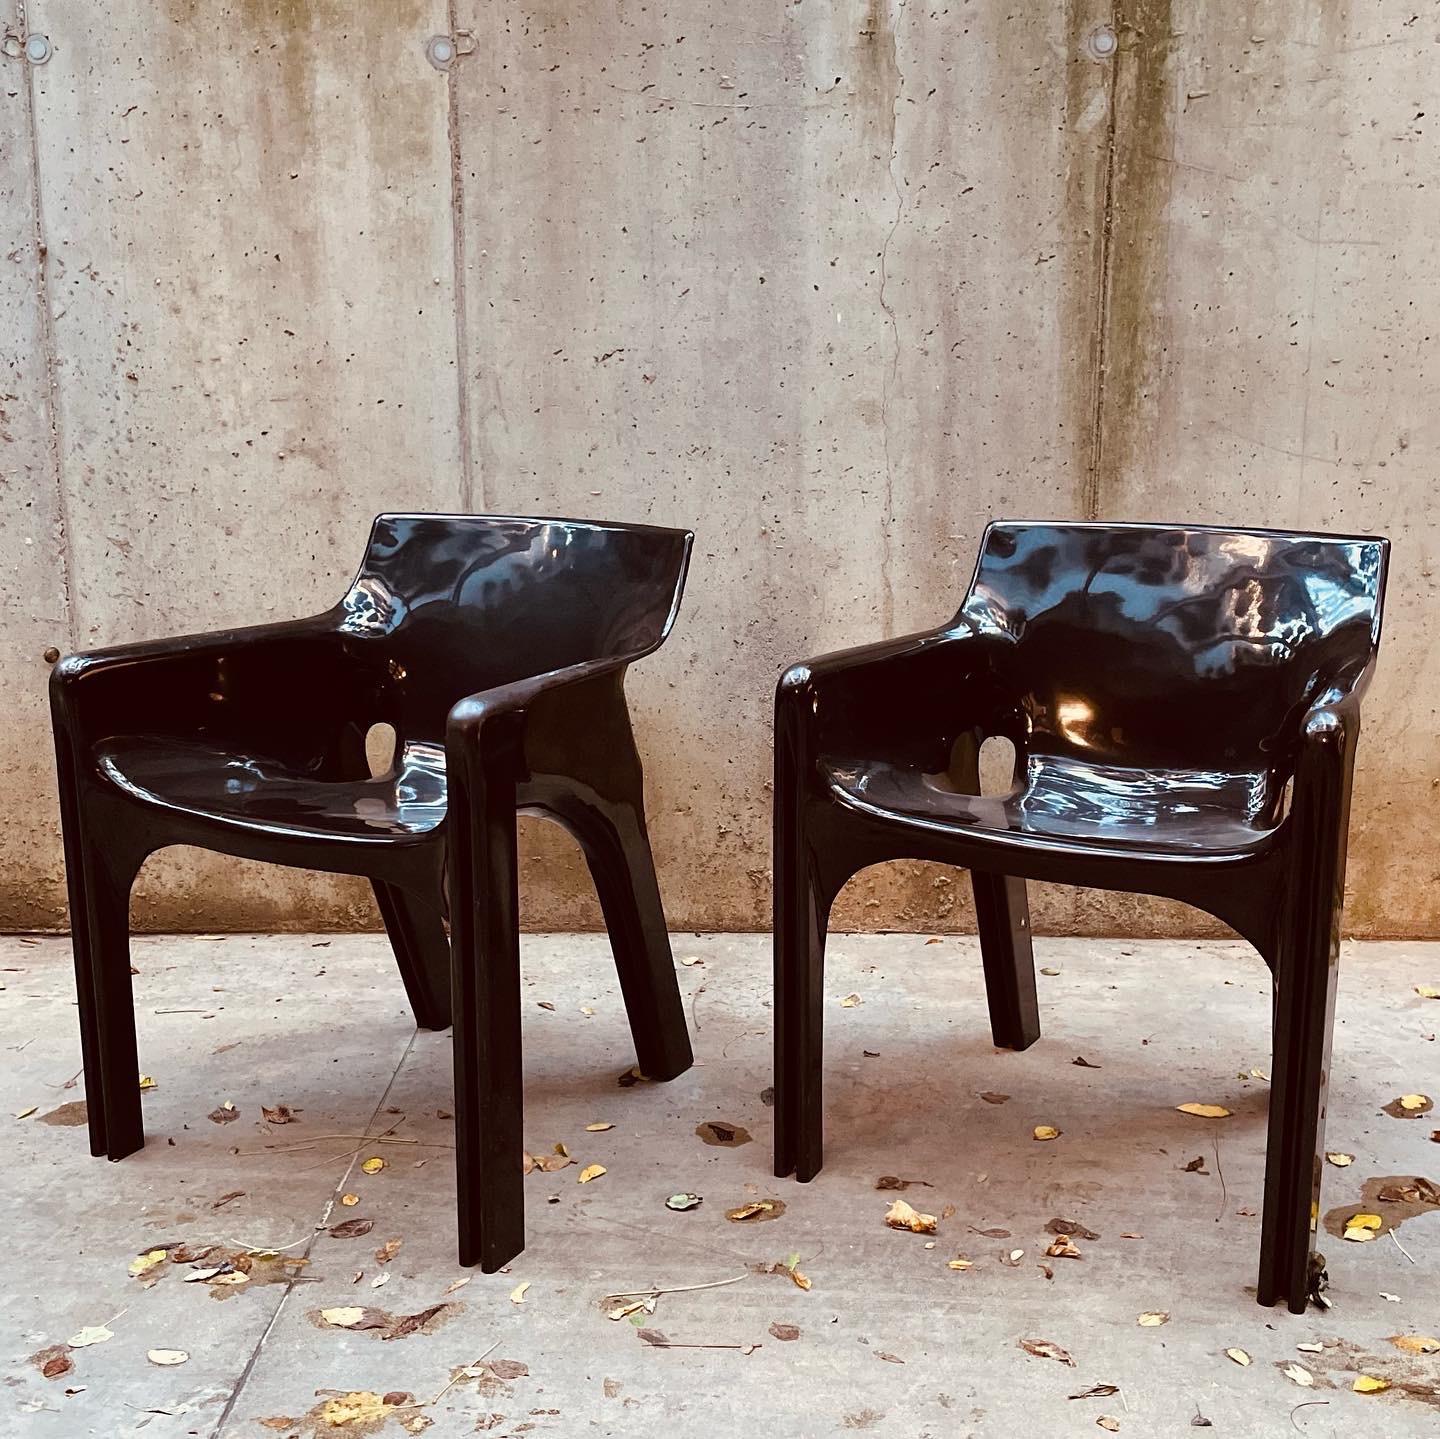 Les exquis fauteuils Gaudi Space Age de Vico Magistretti pour Artemide, avec une captivante patine vintage en plastique brun chocolat. Conçus avec une esthétique épurée et futuriste, ces fauteuils présentent des lignes fluides et une courbure